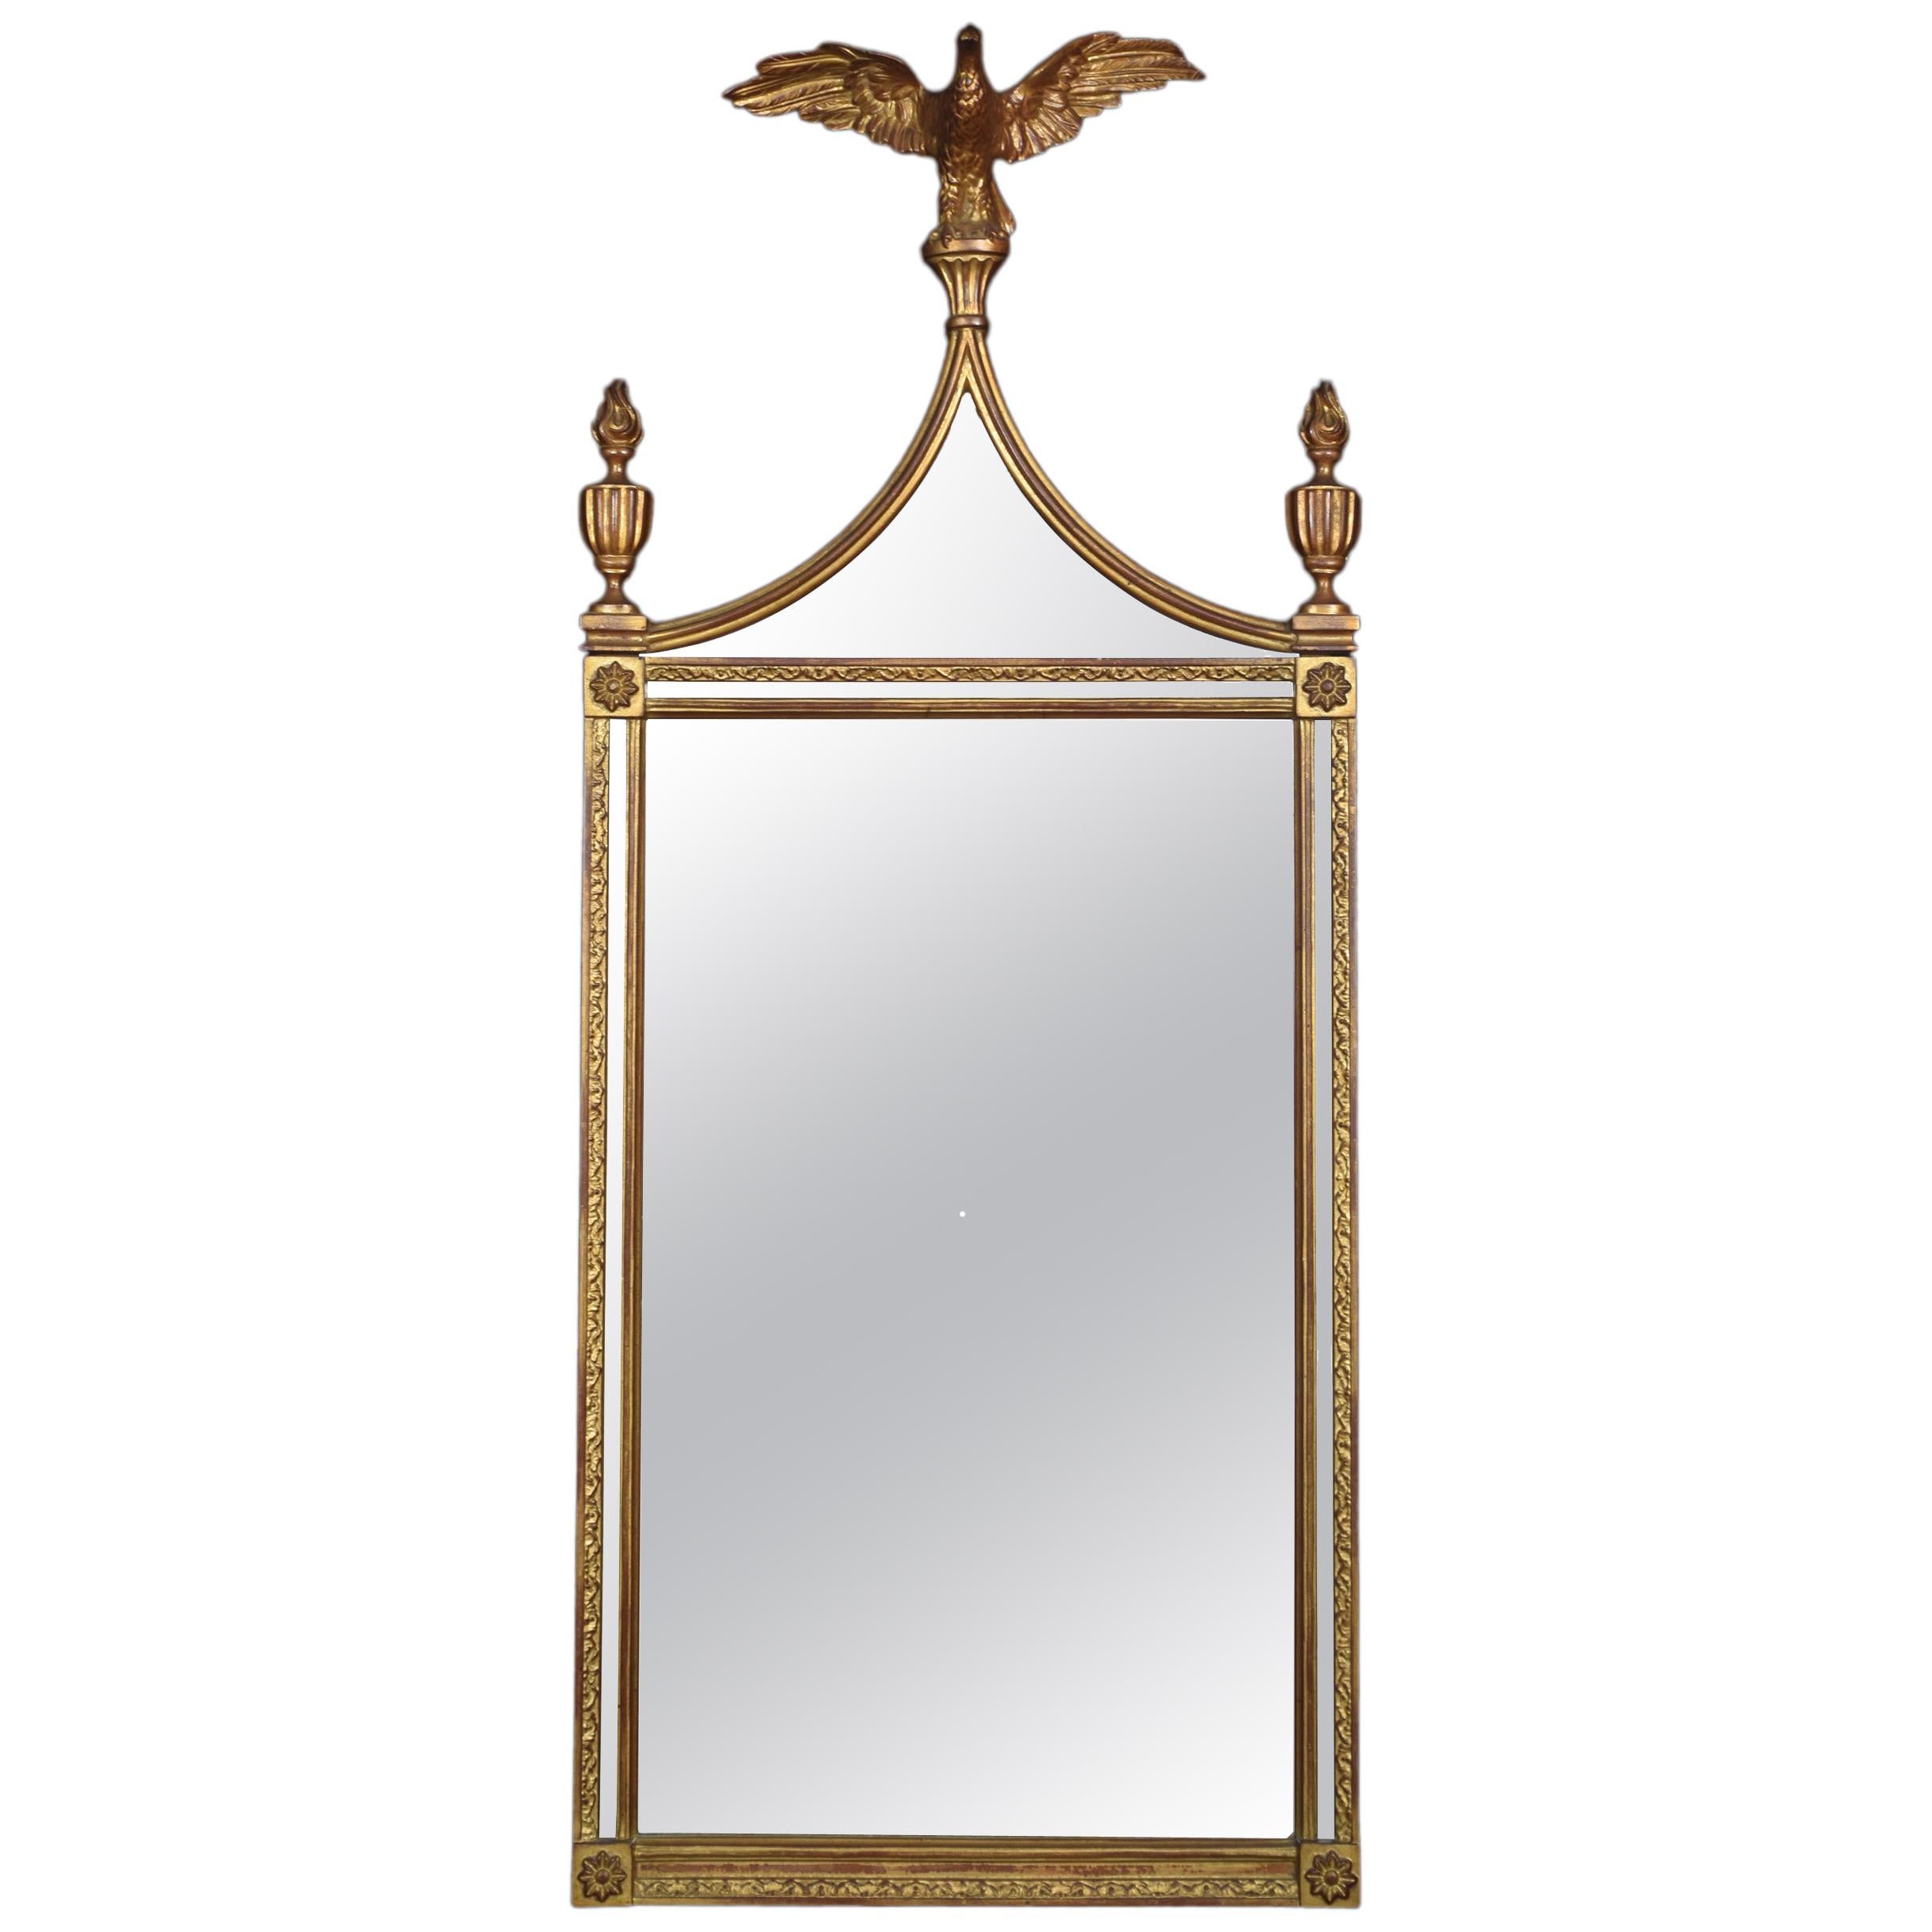 Regency Style Pier Mirror